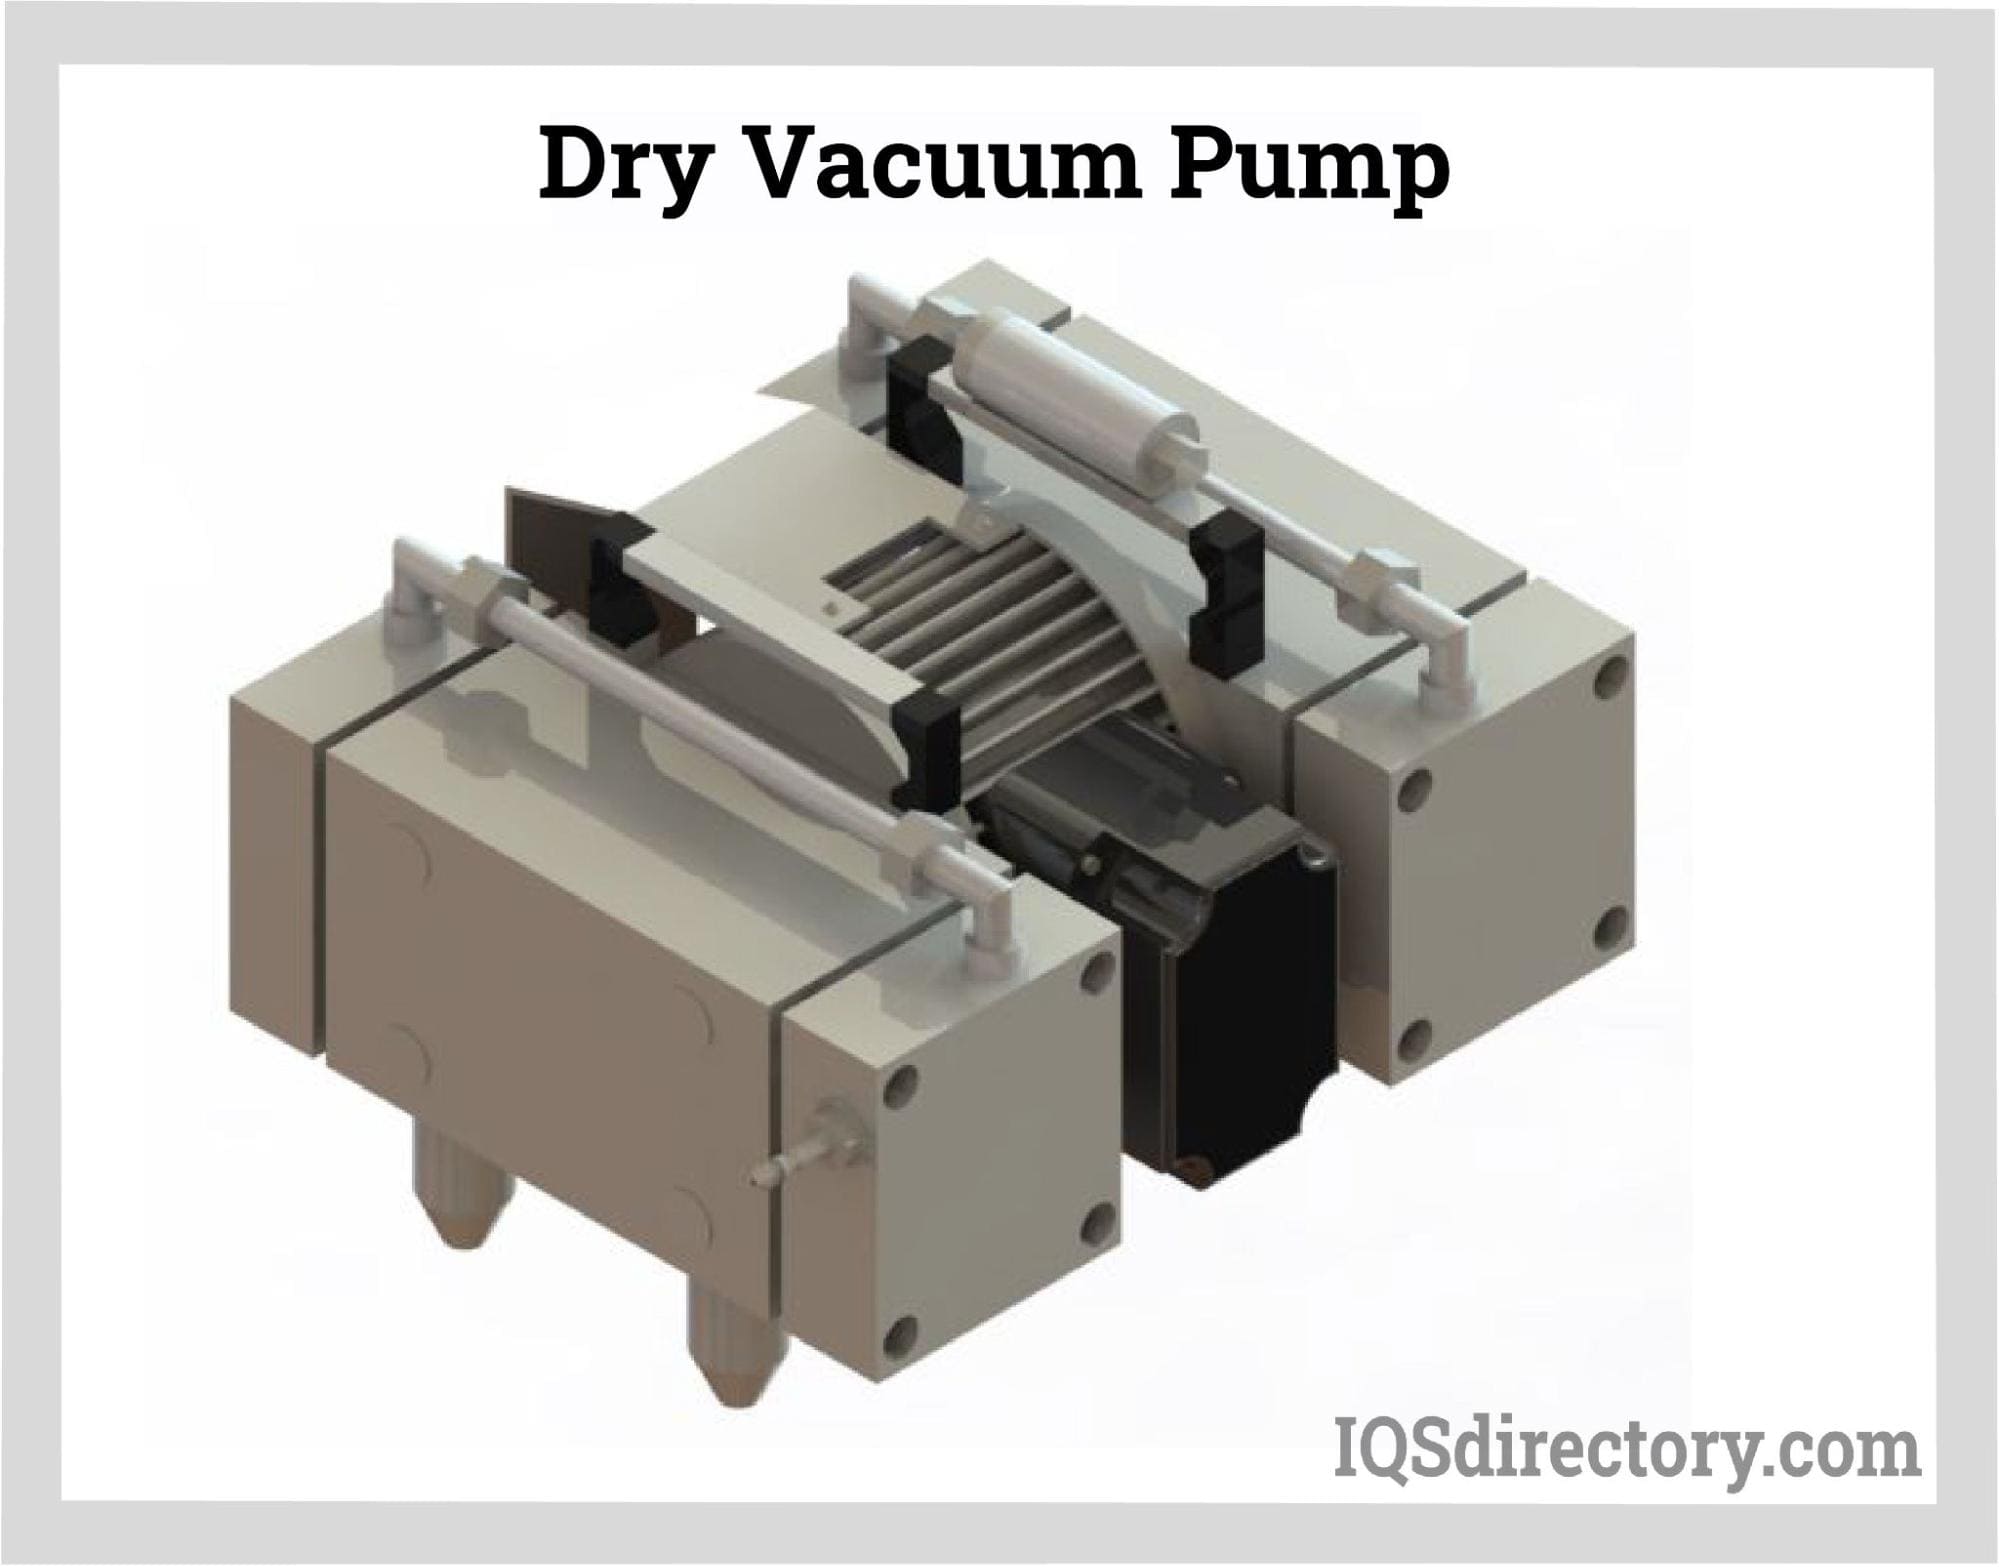 Dry Vacuum Pump